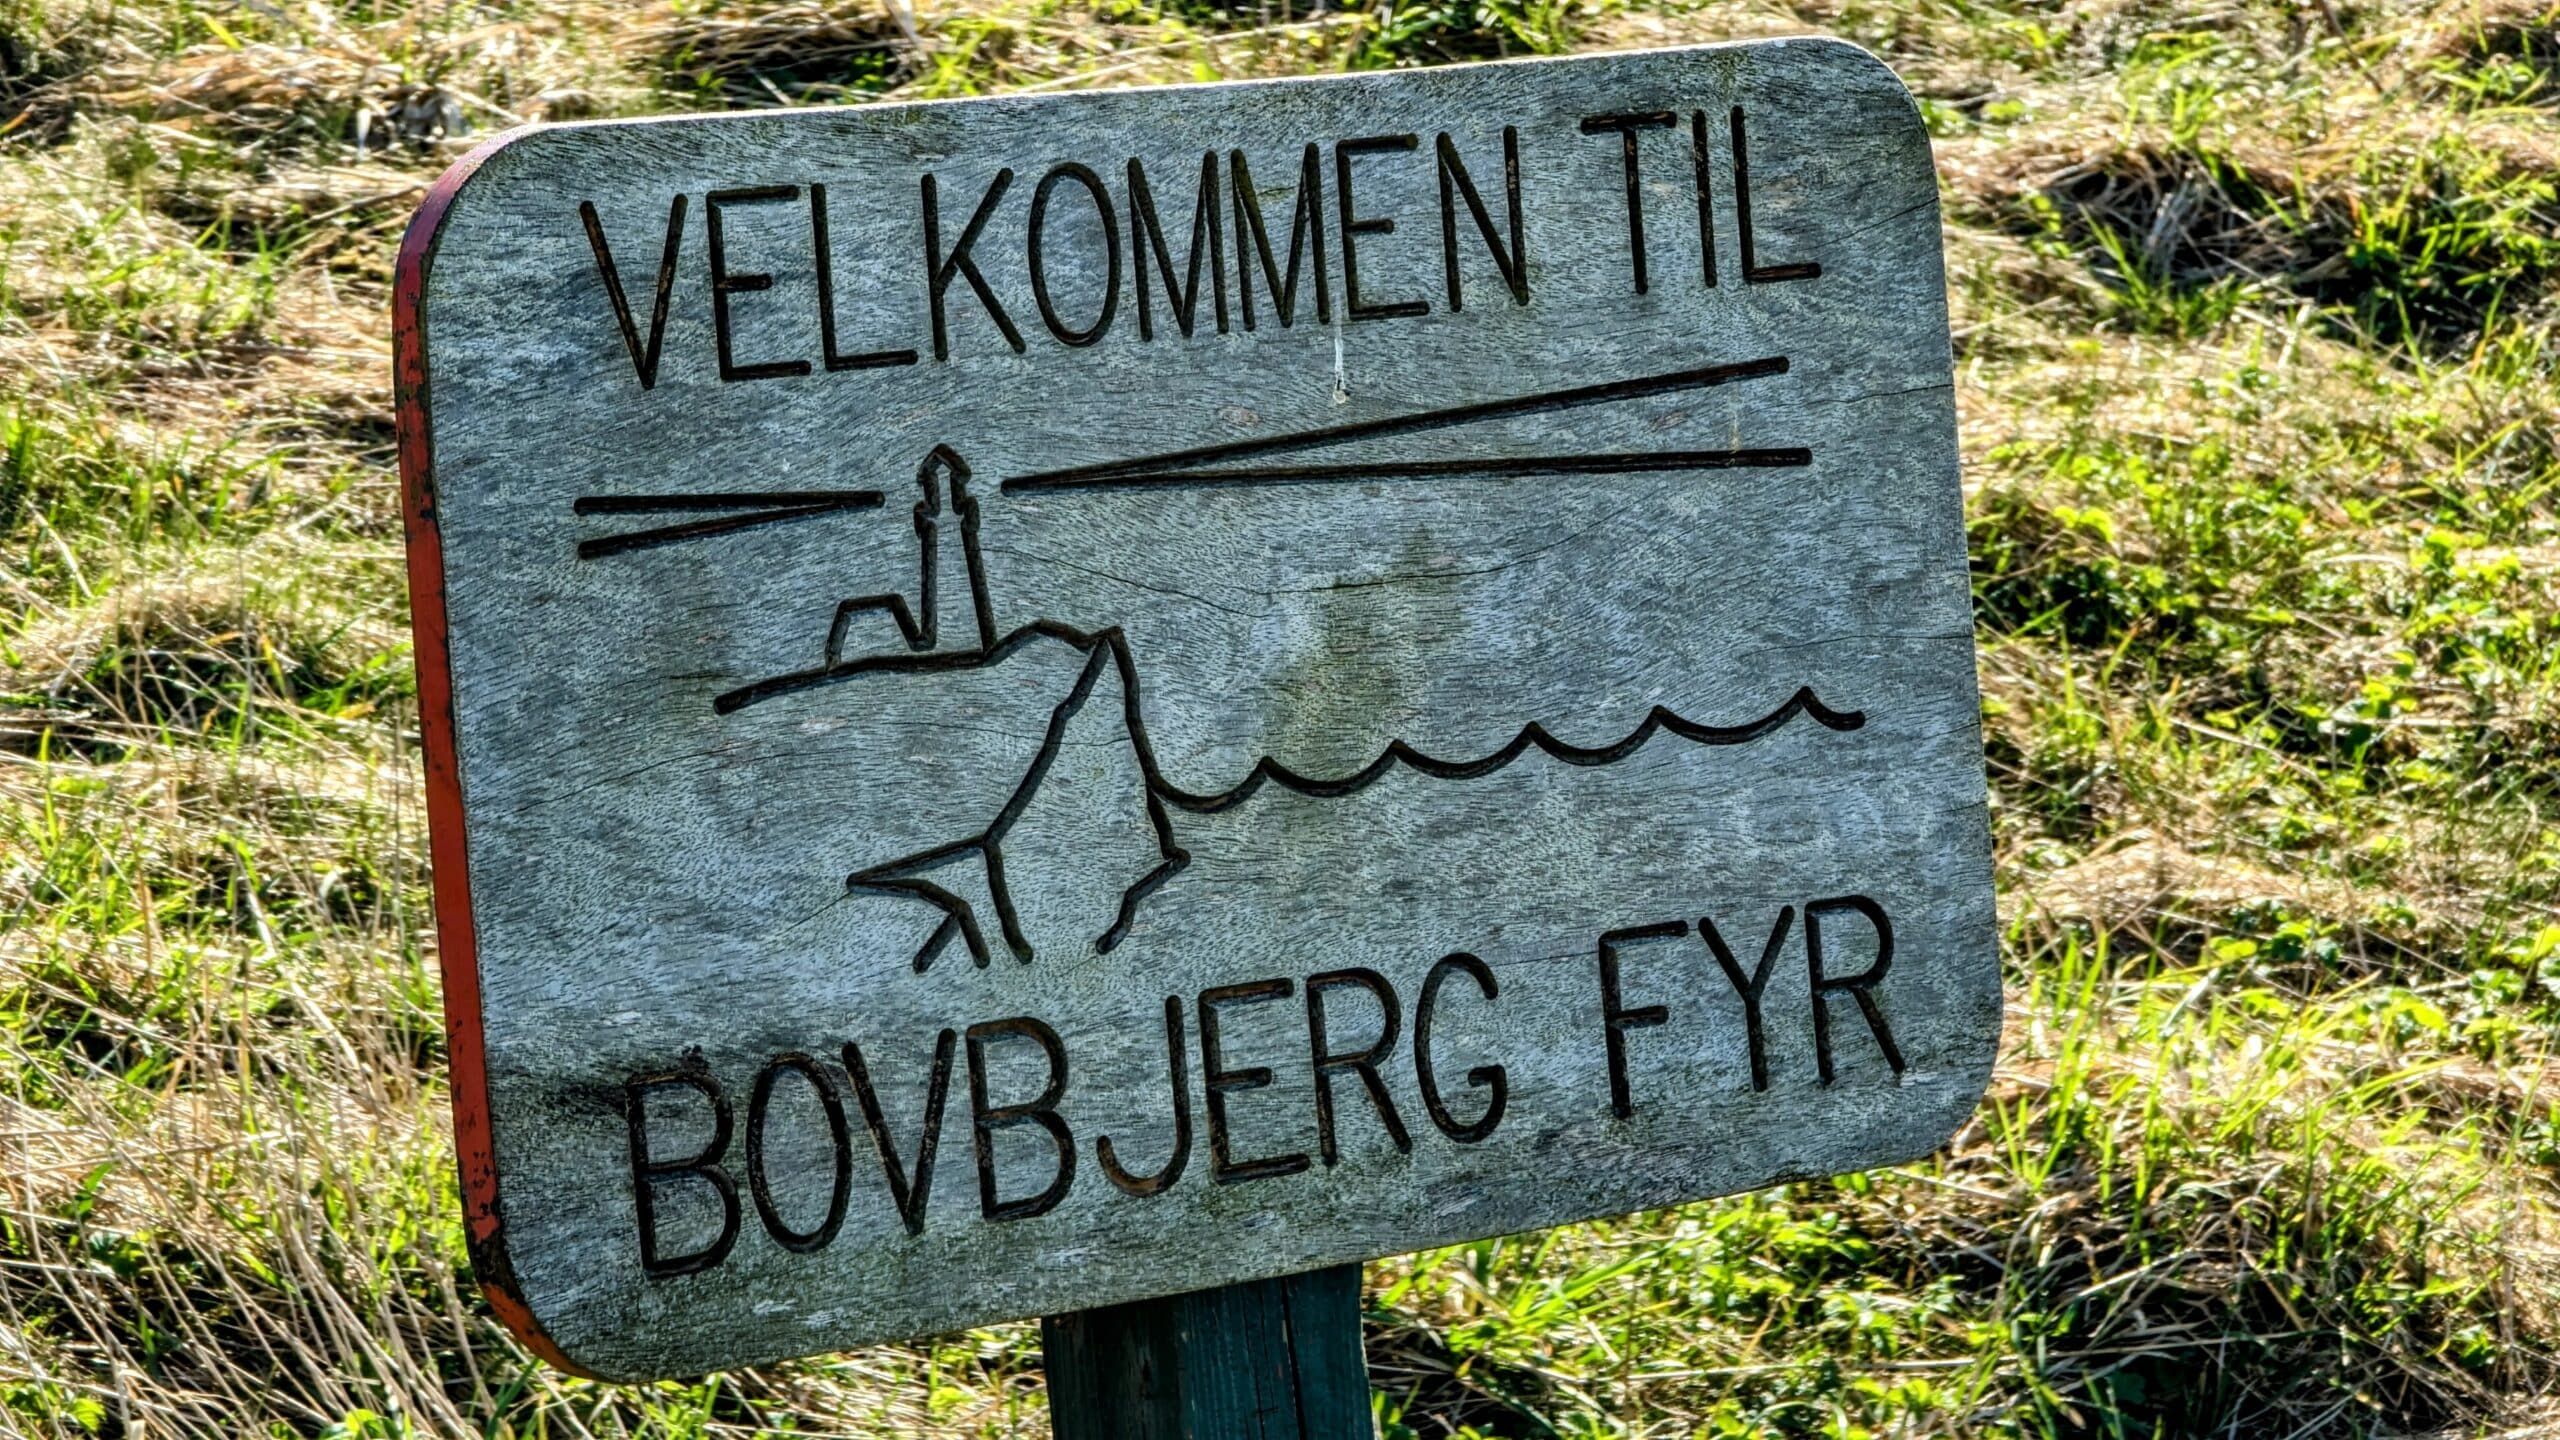 Ein Schild auf einer Wiese mit der Aufschrift „Velkommet ti bojjerf fyr“.